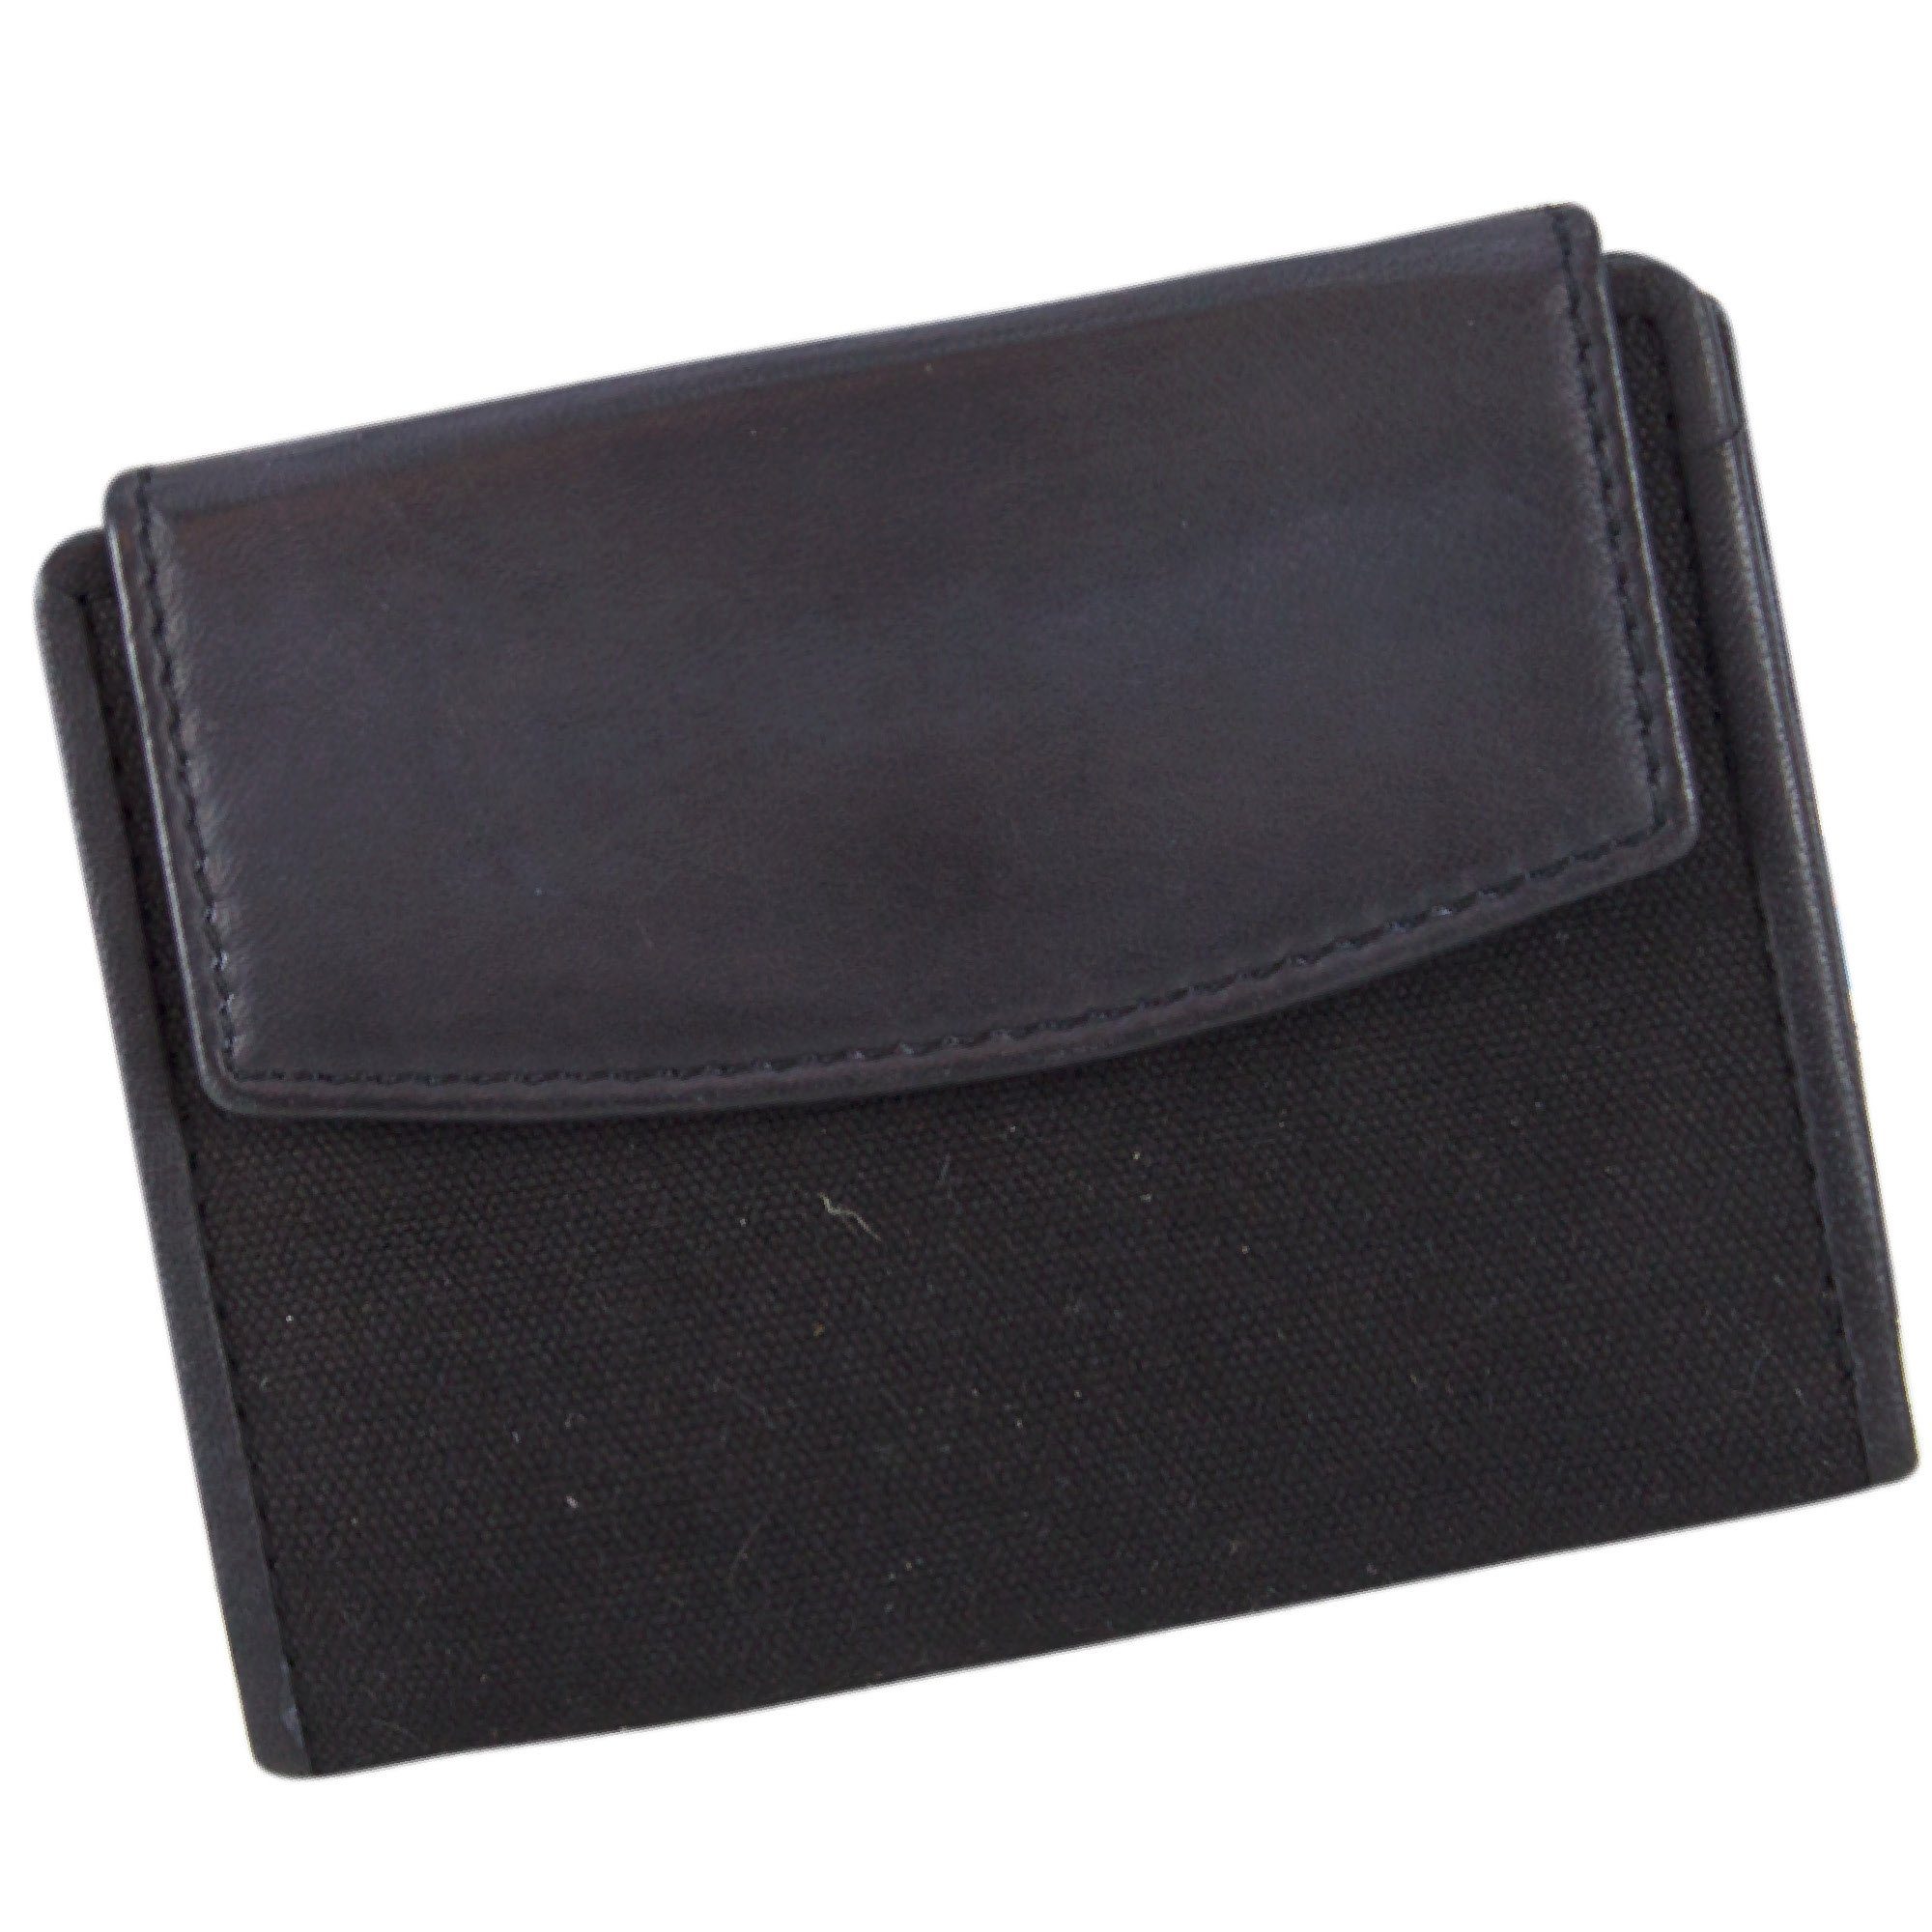 Sunsa Geldbörse 81121 Unisex Vintage Leder Geldbeutel Brieftasche Portemonnaie, echt Leder, Unisex, mit RFID Schutz, zeitlos, Canvas, Vintage Style schwarz